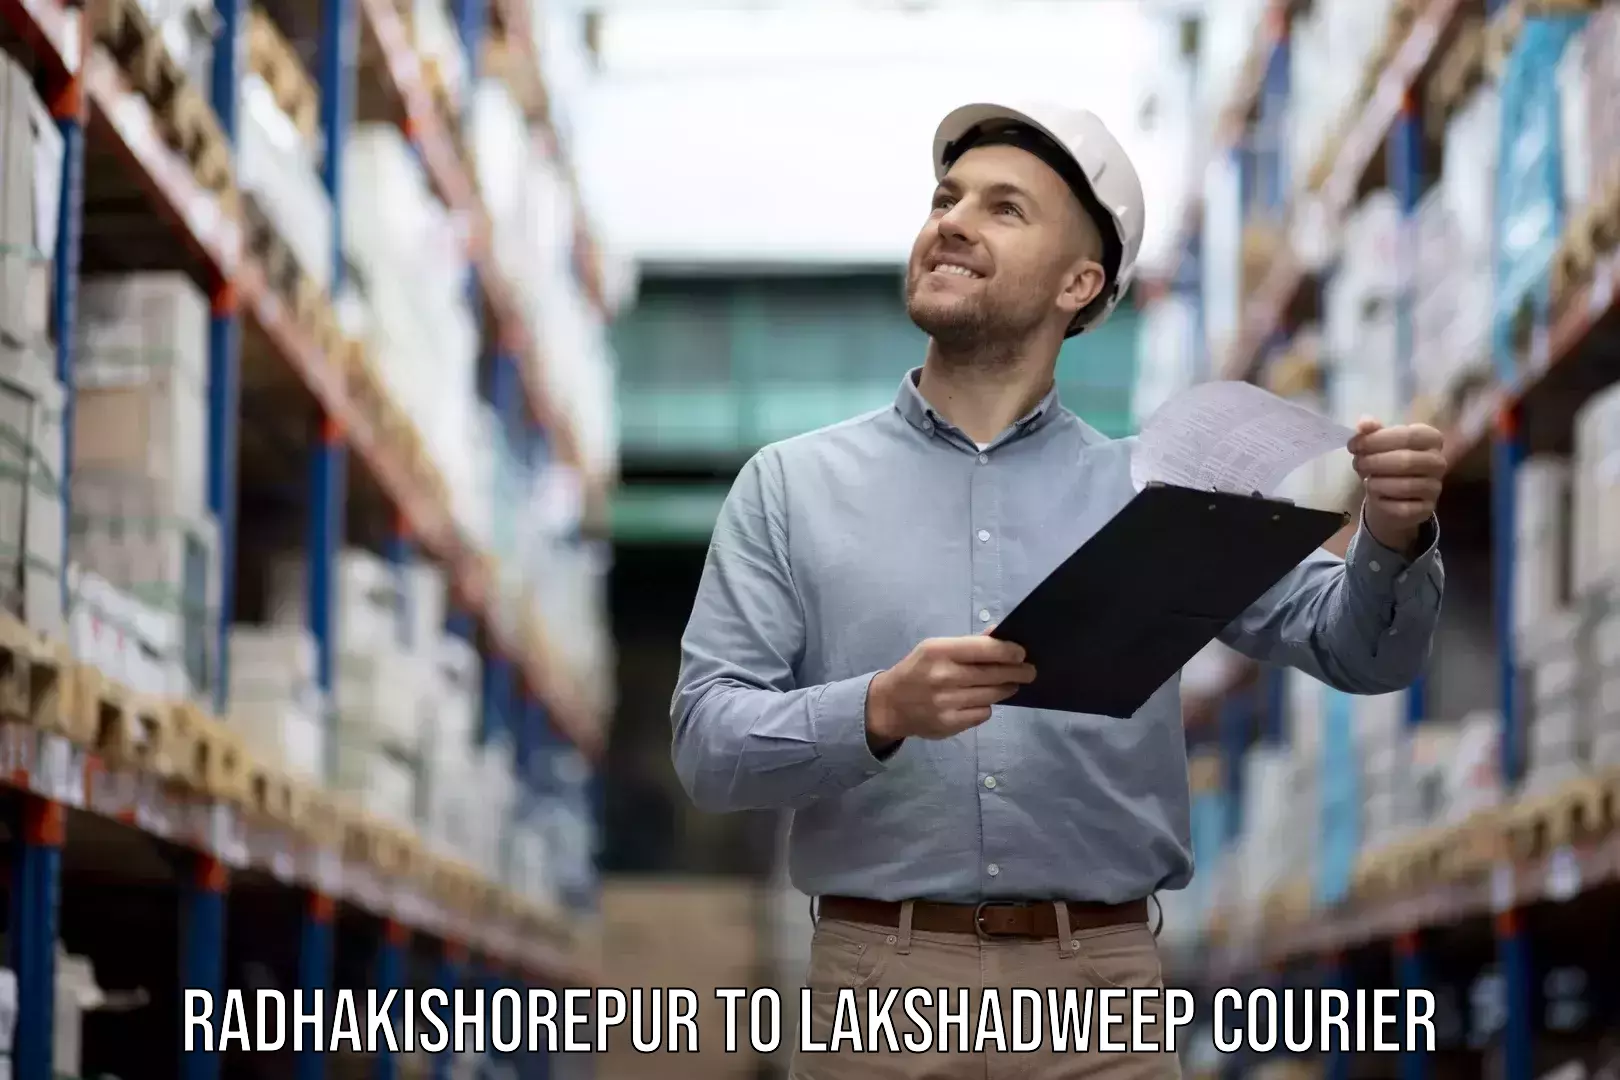 Furniture transport experts Radhakishorepur to Lakshadweep